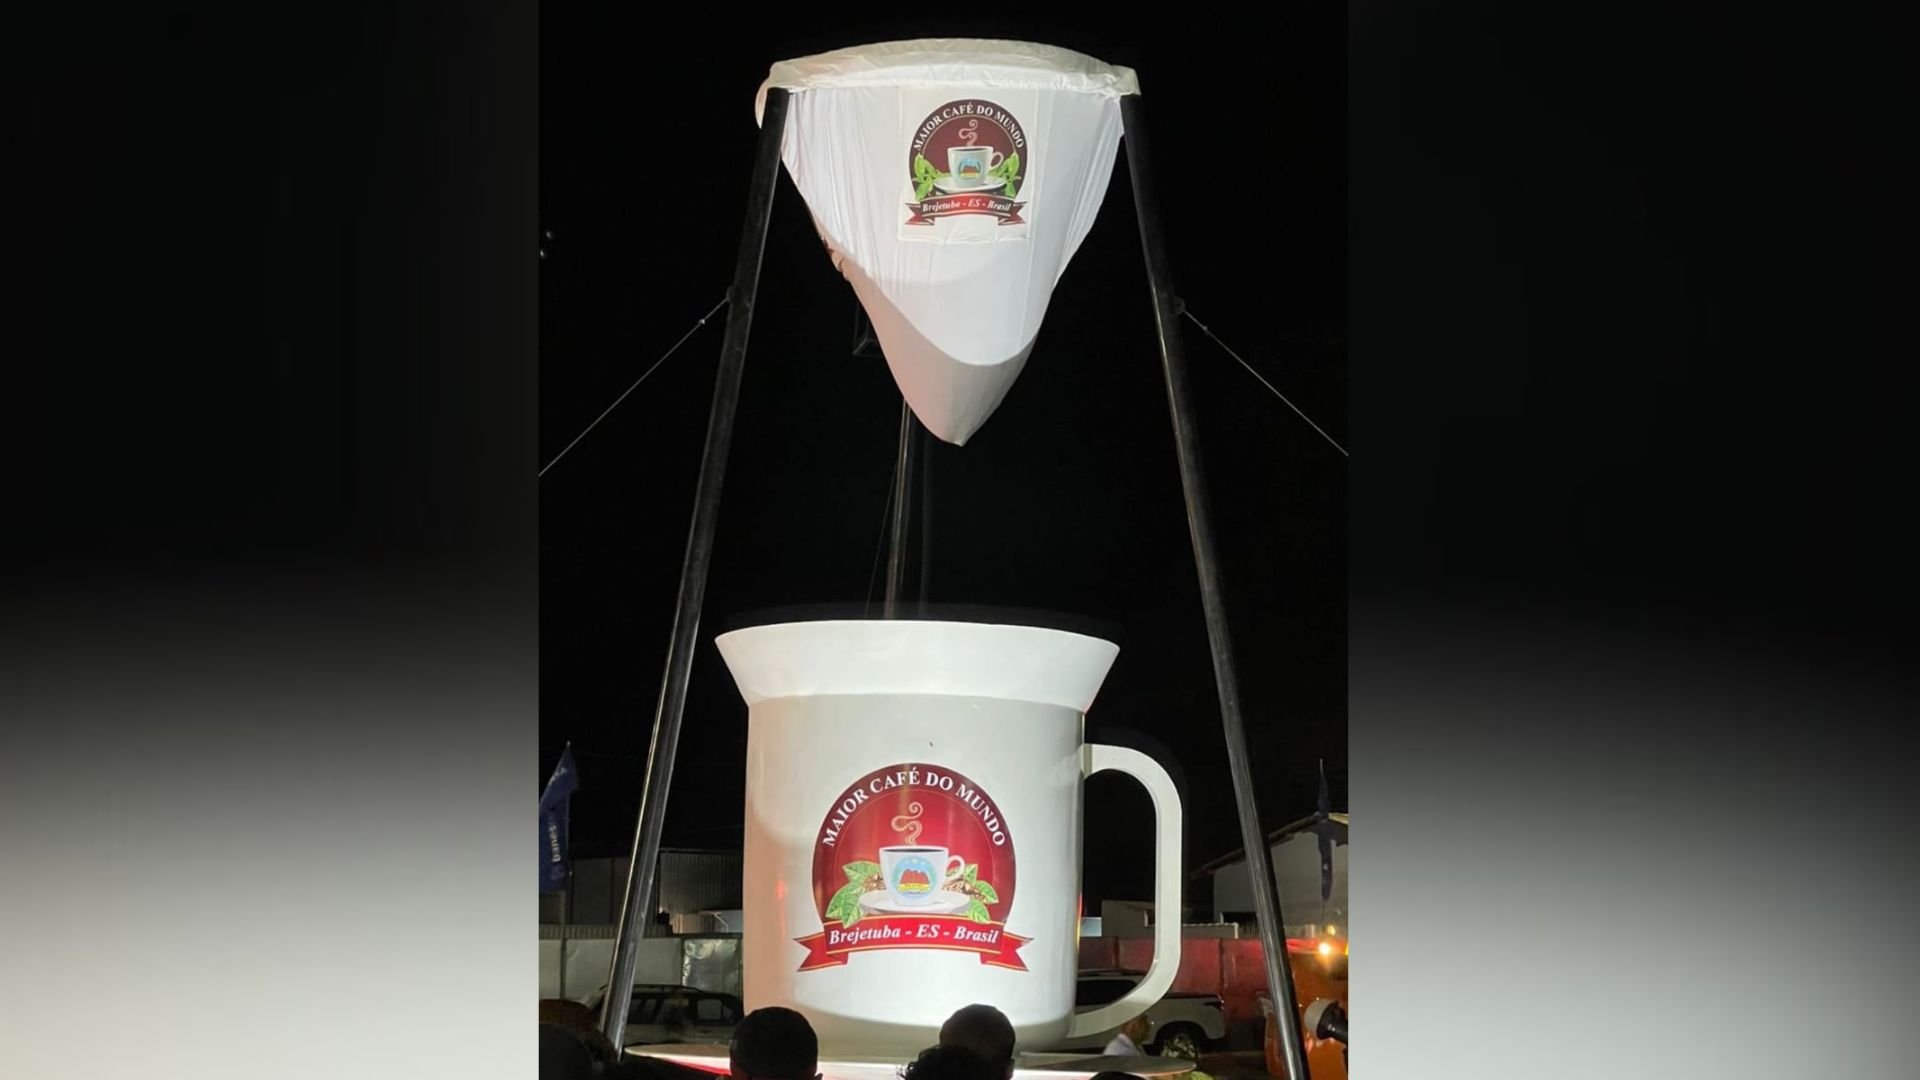 Foram utilizados cerca de 500 quilos de pó de café, um coador com 2,20 metros de diâmetro e uma xícara de 2,70 metros de altura